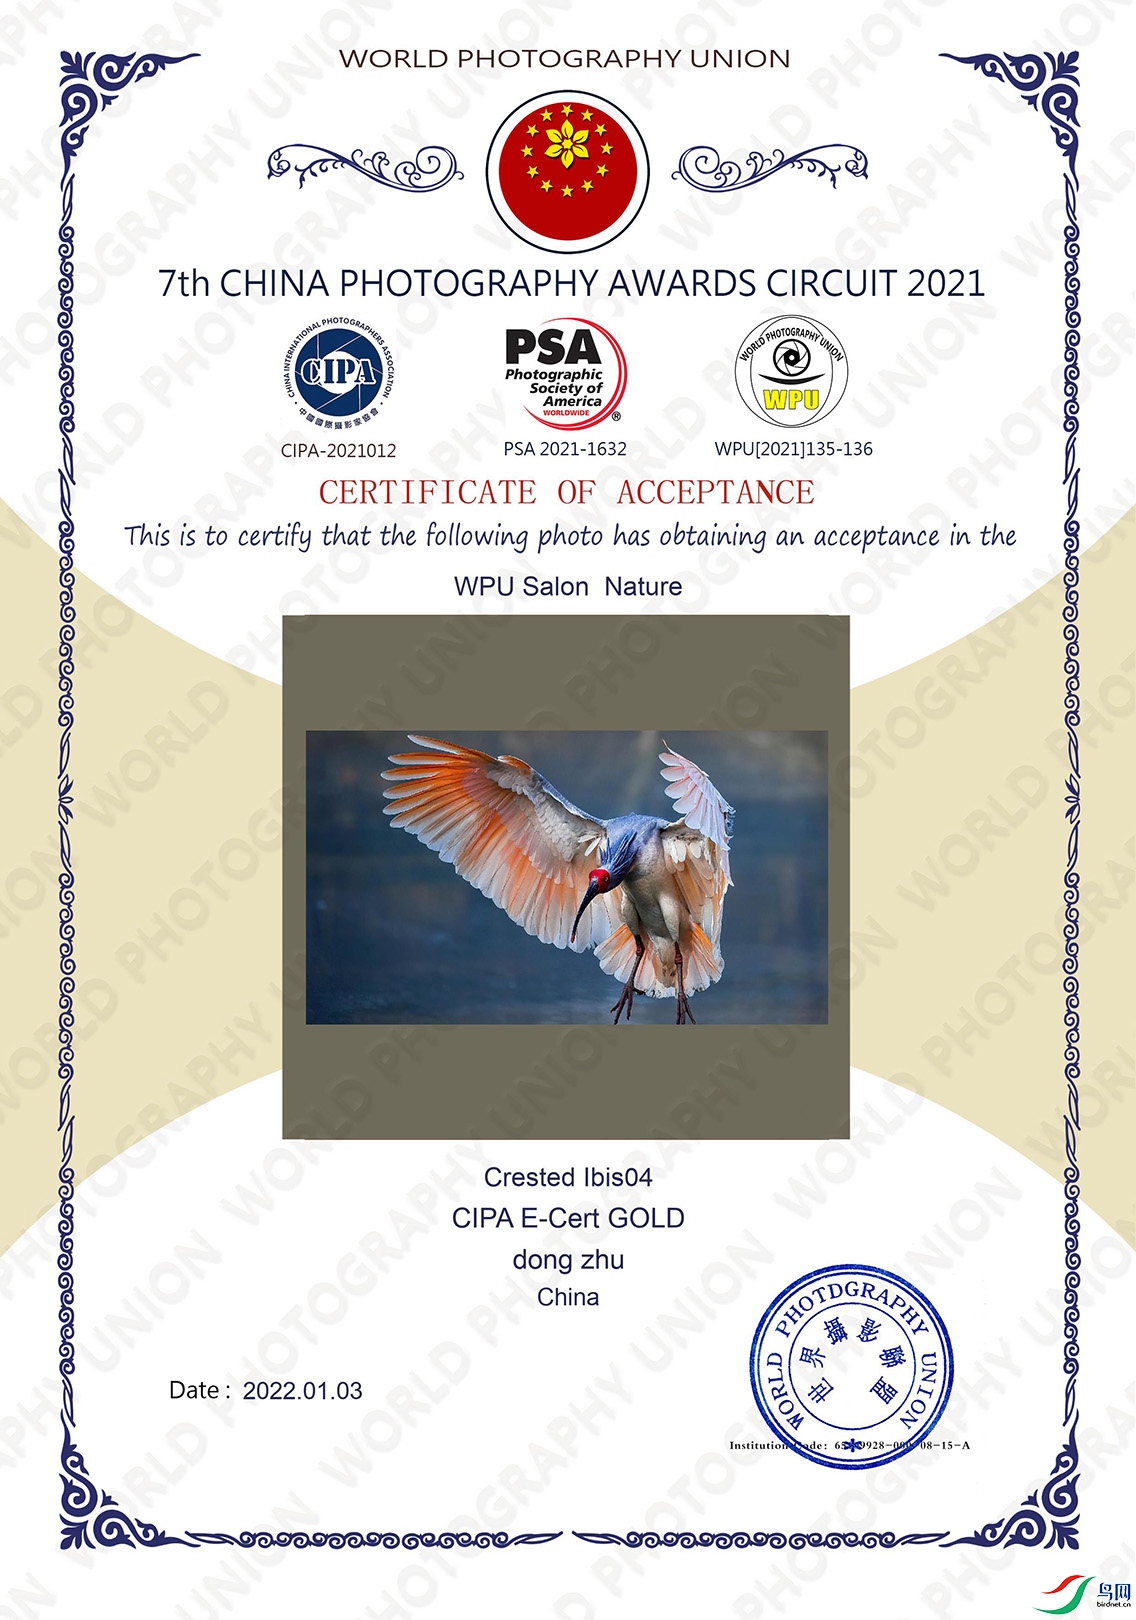 1.作品《Crested Ibis04》获得2021第七届中国摄影奖巡回赛CIPA电子证书金奖.jpg